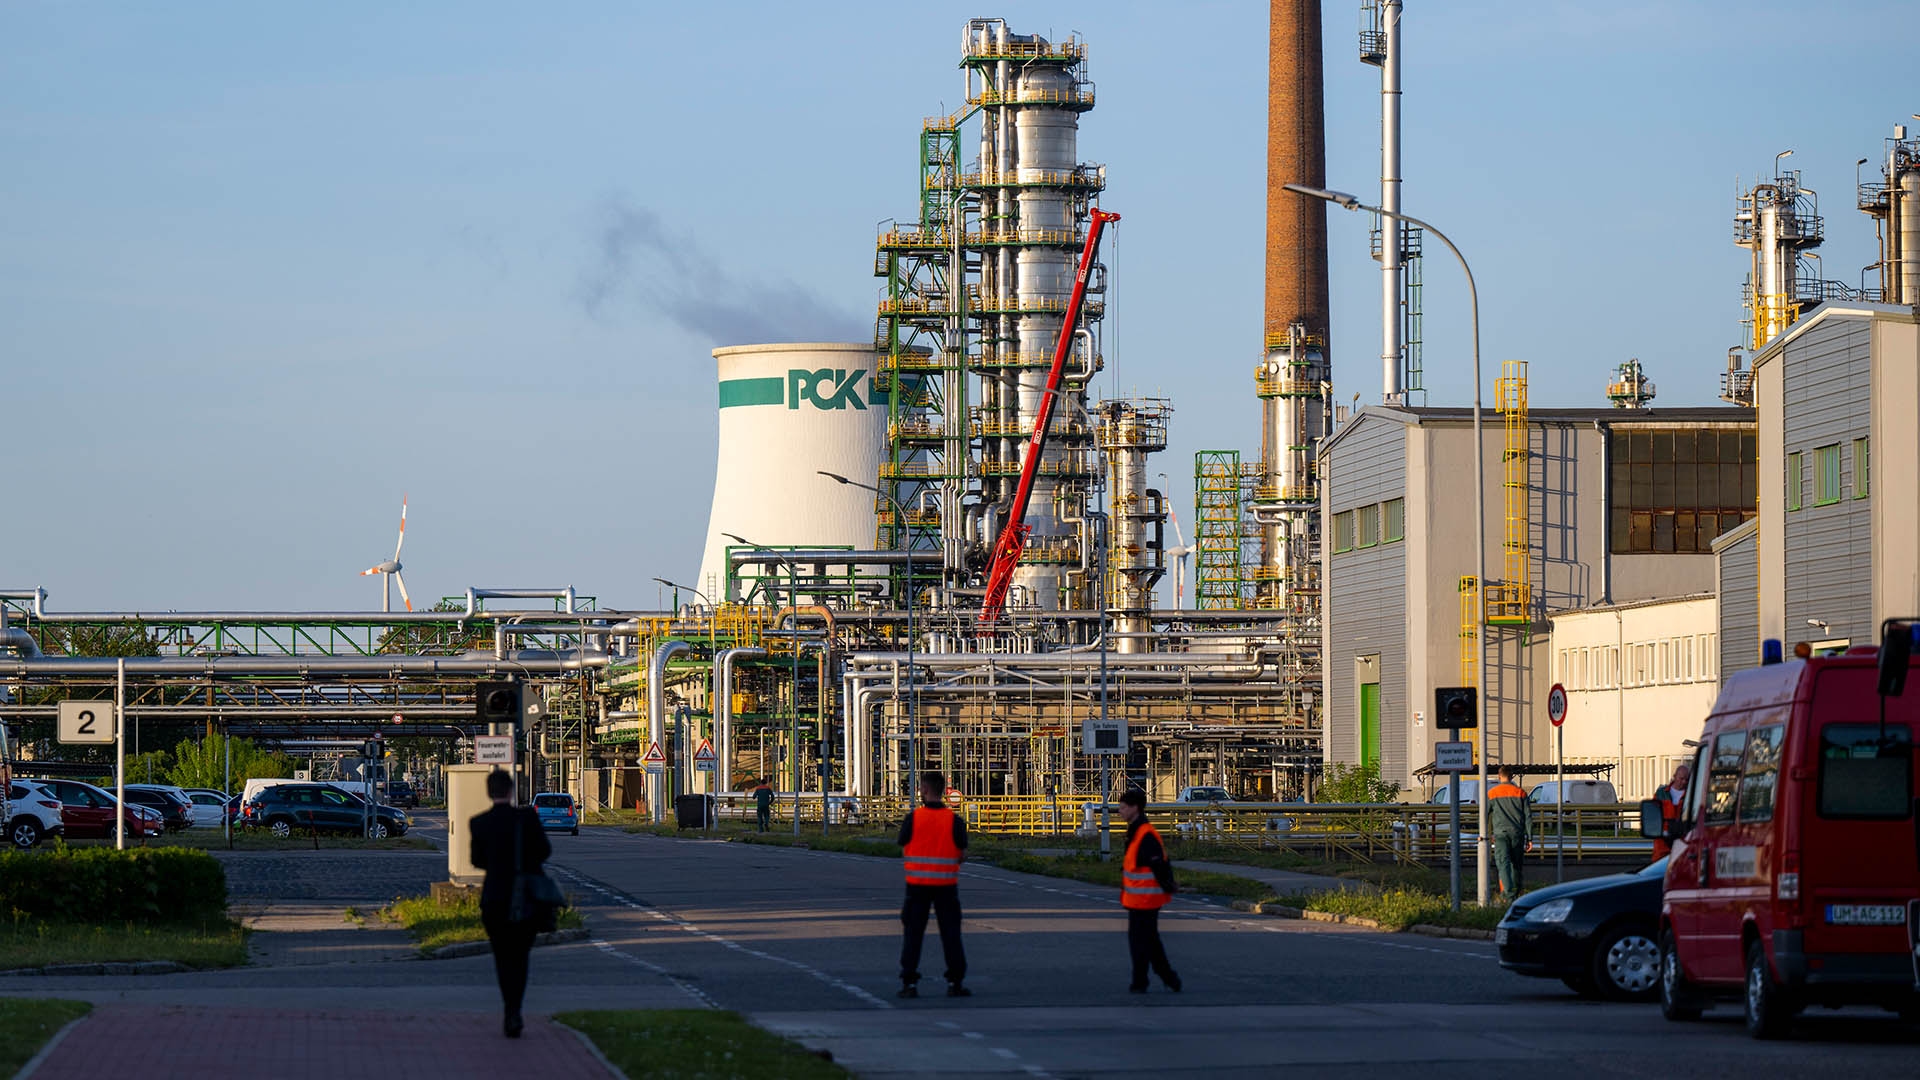 Die Anlagen der Erdölraffinerie auf dem Industriegelände der PCK-Raffinerie GmbH | picture alliance/dpa